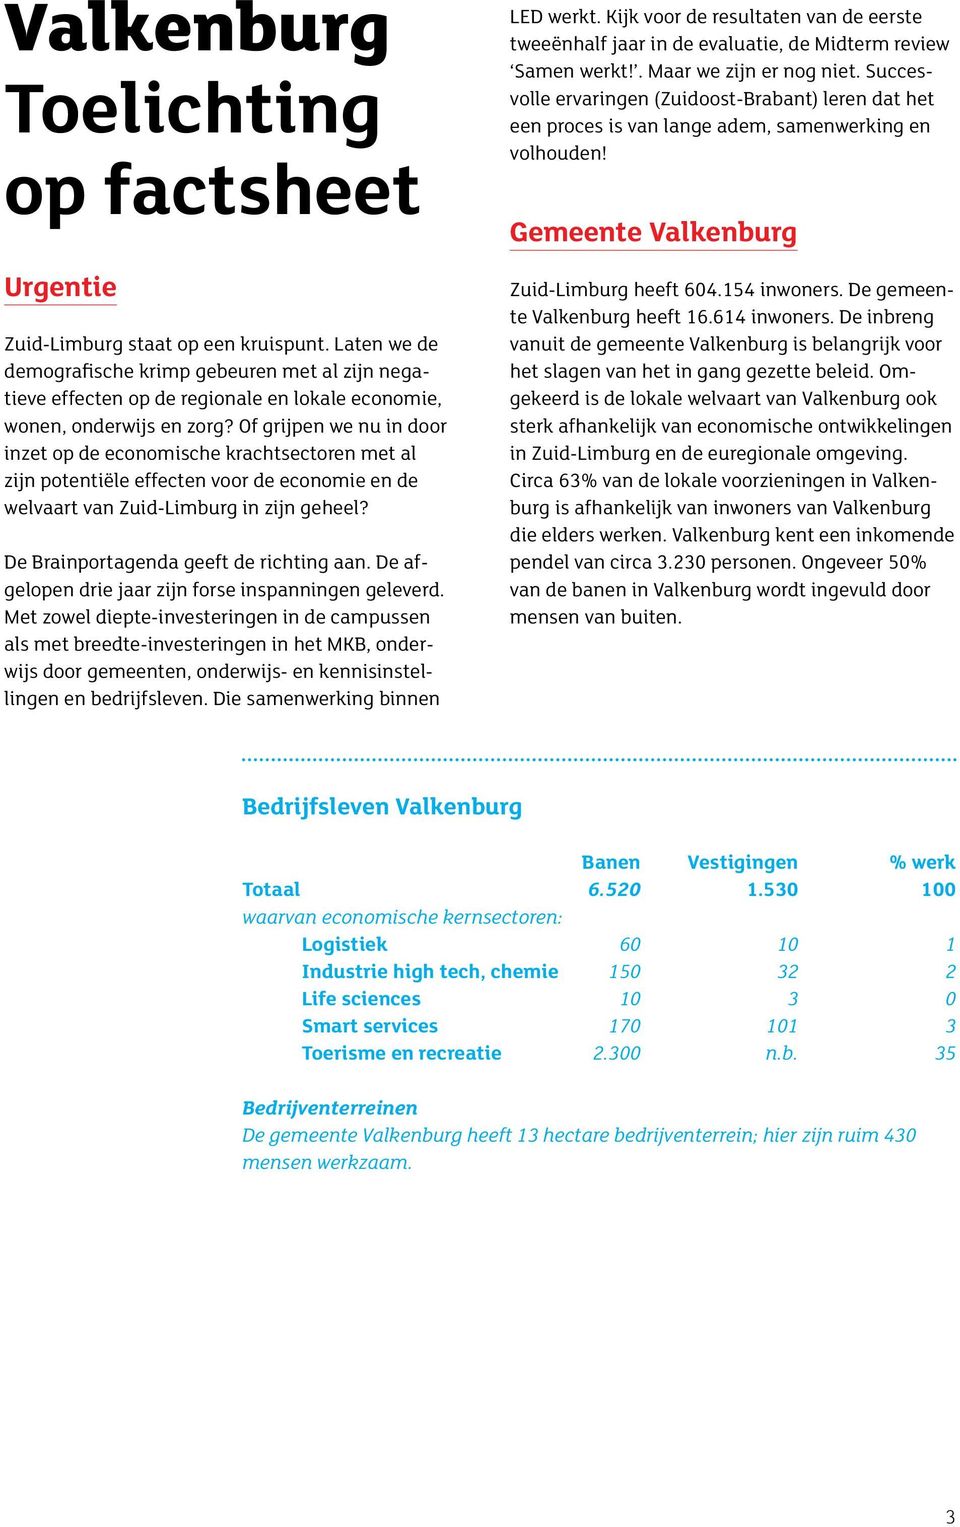 Of grijpen we nu in door inzet op de economische krachtsectoren met al zijn potentiële effecten voor de economie en de welvaart van Zuid-Limburg in zijn geheel?